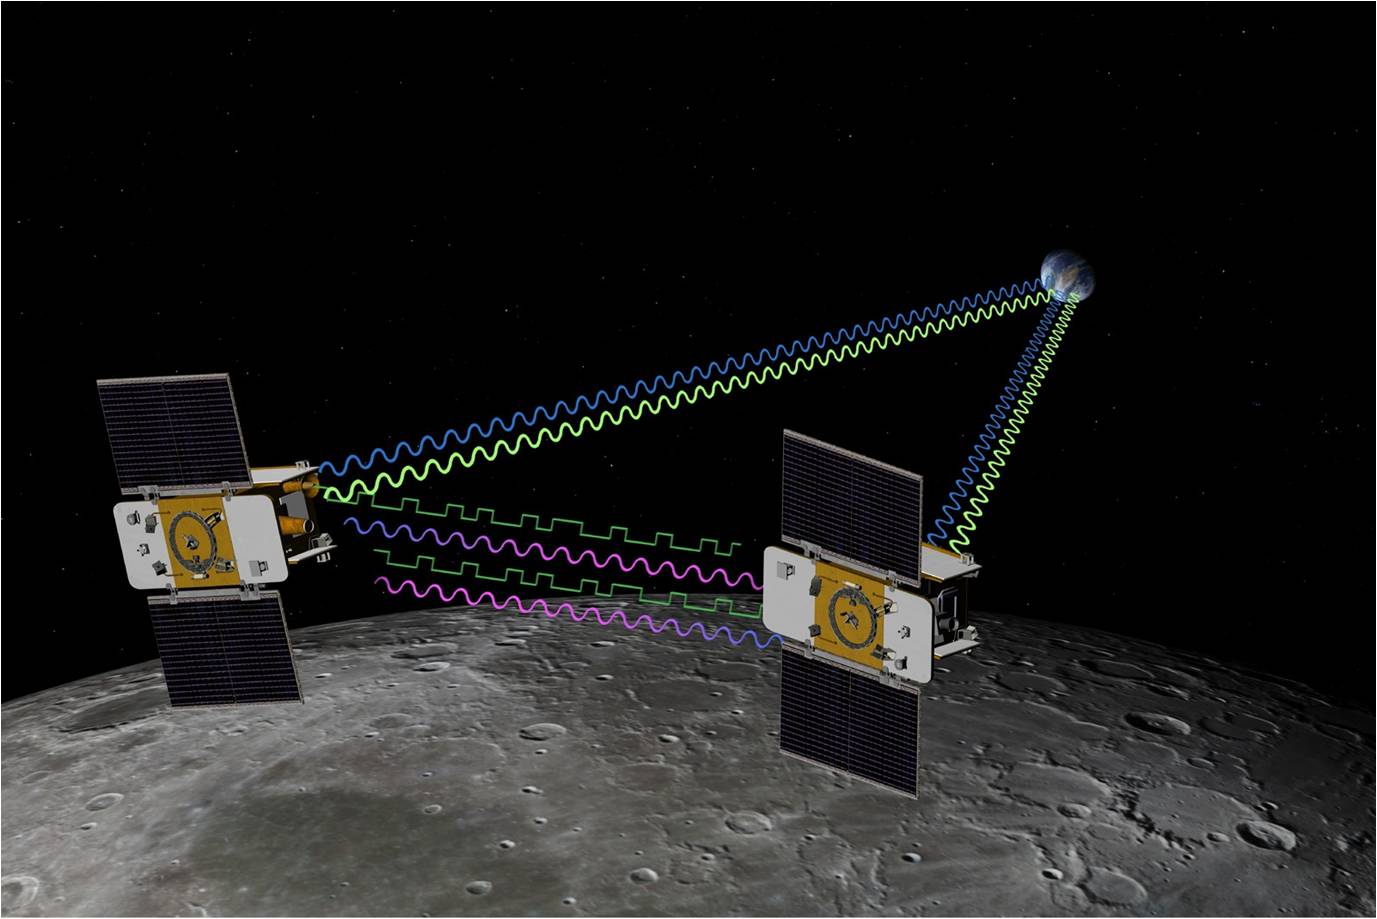 Menininko iliustracijoje pavaizduoti du sparnuoti saulės energija varomi erdvėlaiviai, sujungti banguotomis linijomis, vaizduojančiomis ryšį.  Linijos tęsiasi iki žemės.  Virš mėnulio plūduriuojantis erdvėlaivis.